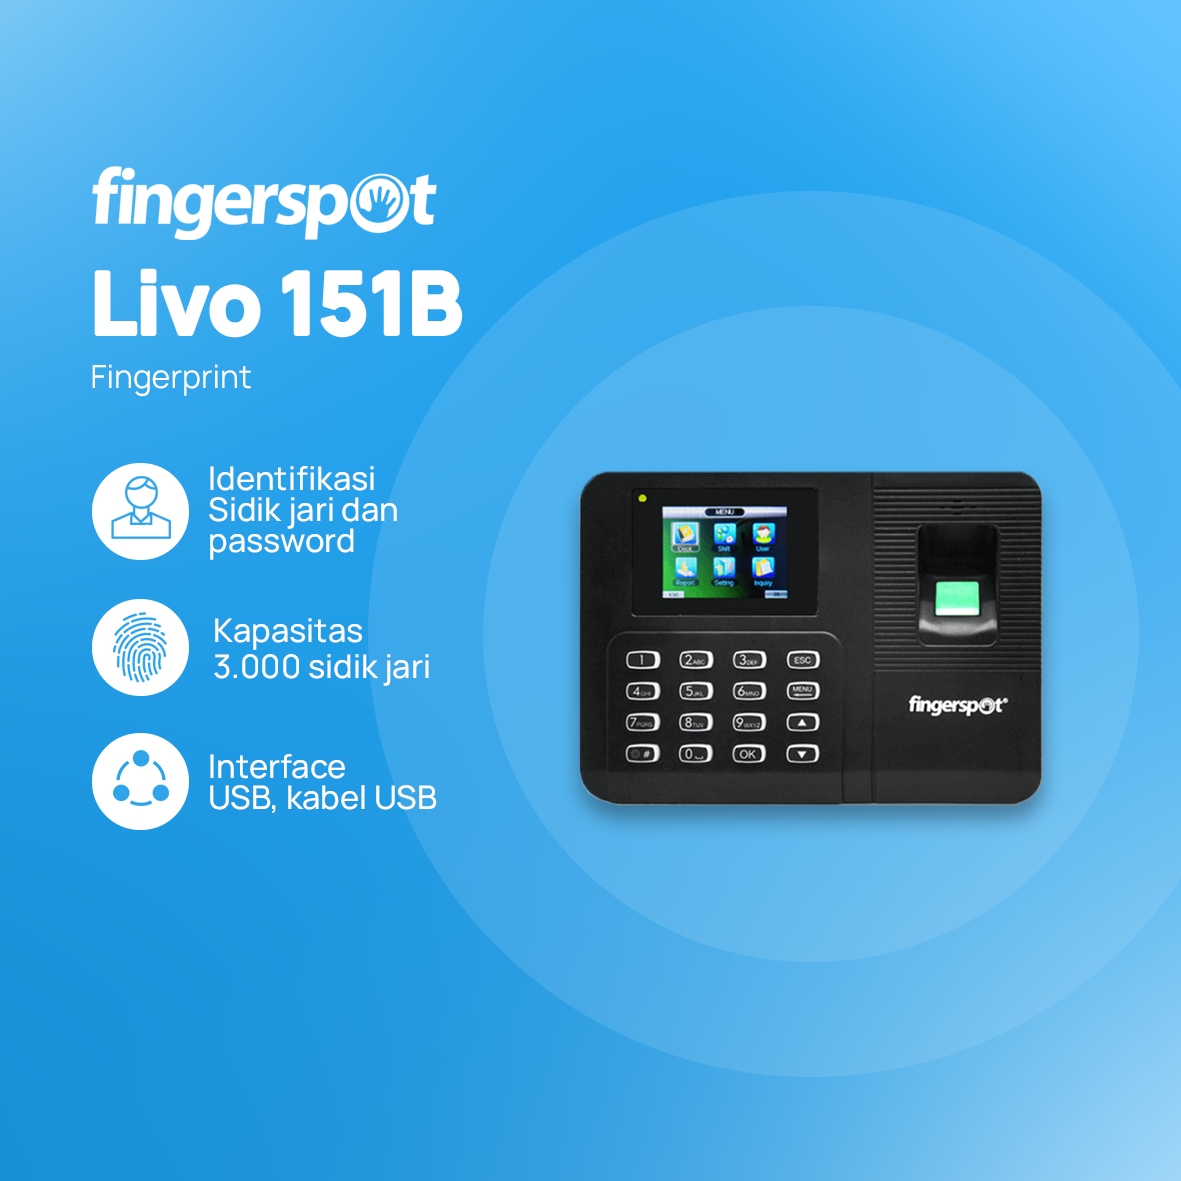 Fingerspot Personnel Livo 161B (USB Flashdisk + Battery)